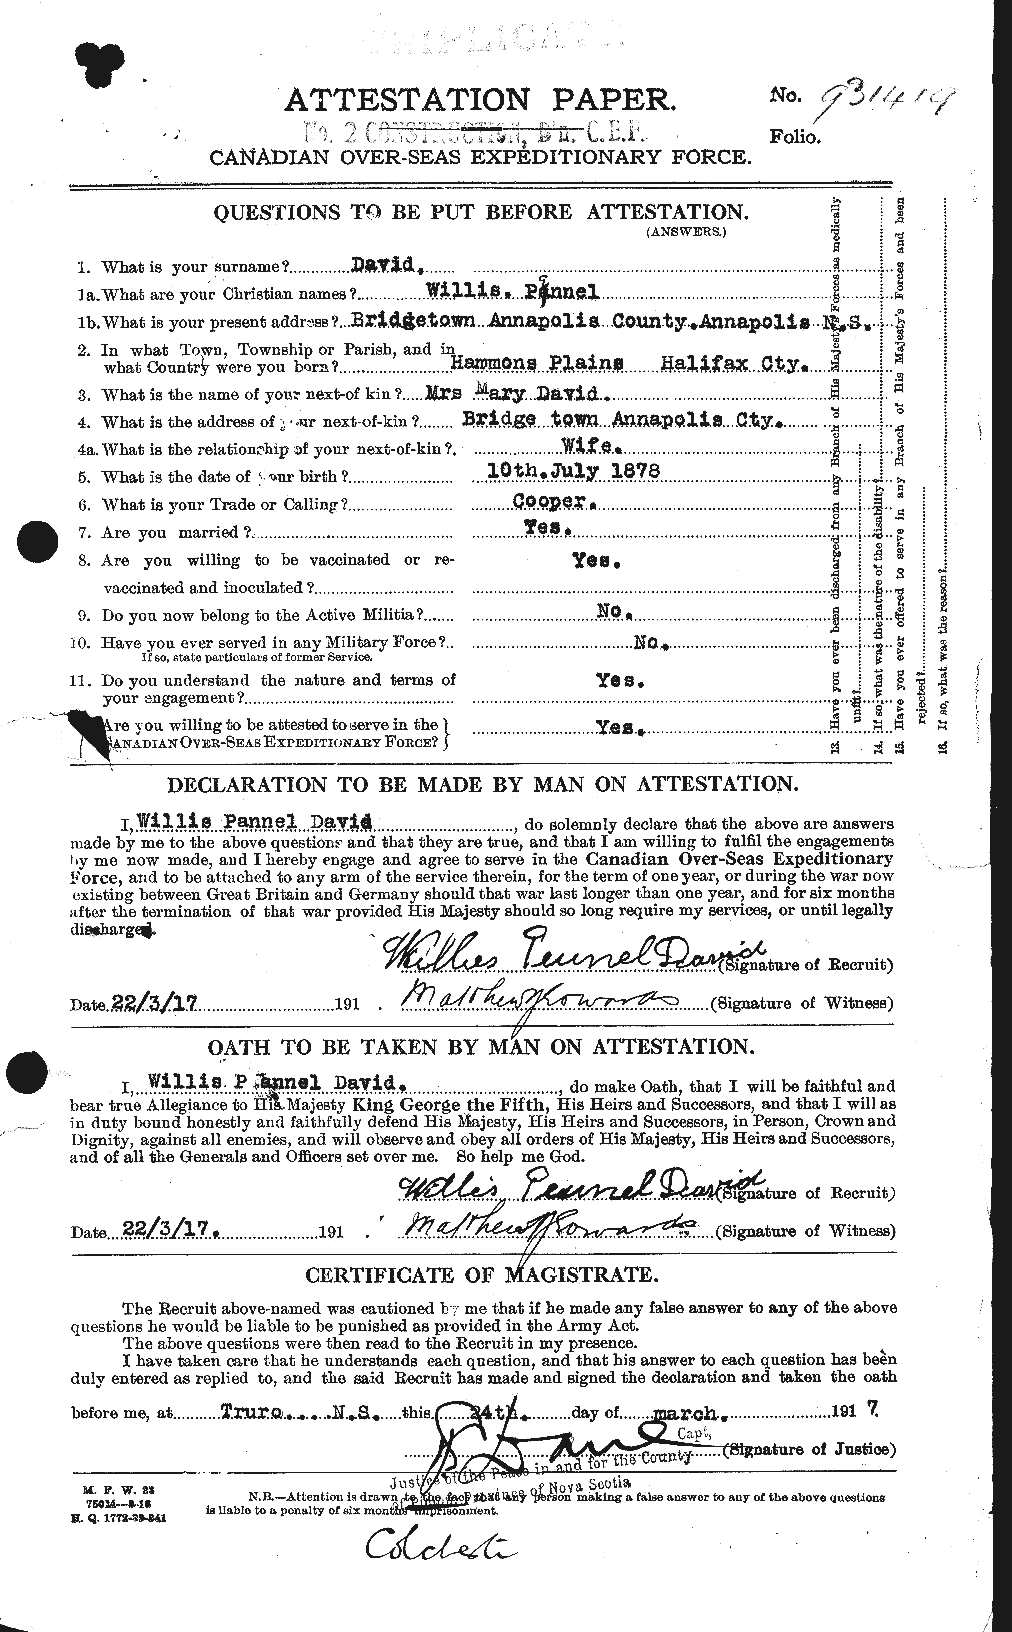 Dossiers du Personnel de la Première Guerre mondiale - CEC 280652a